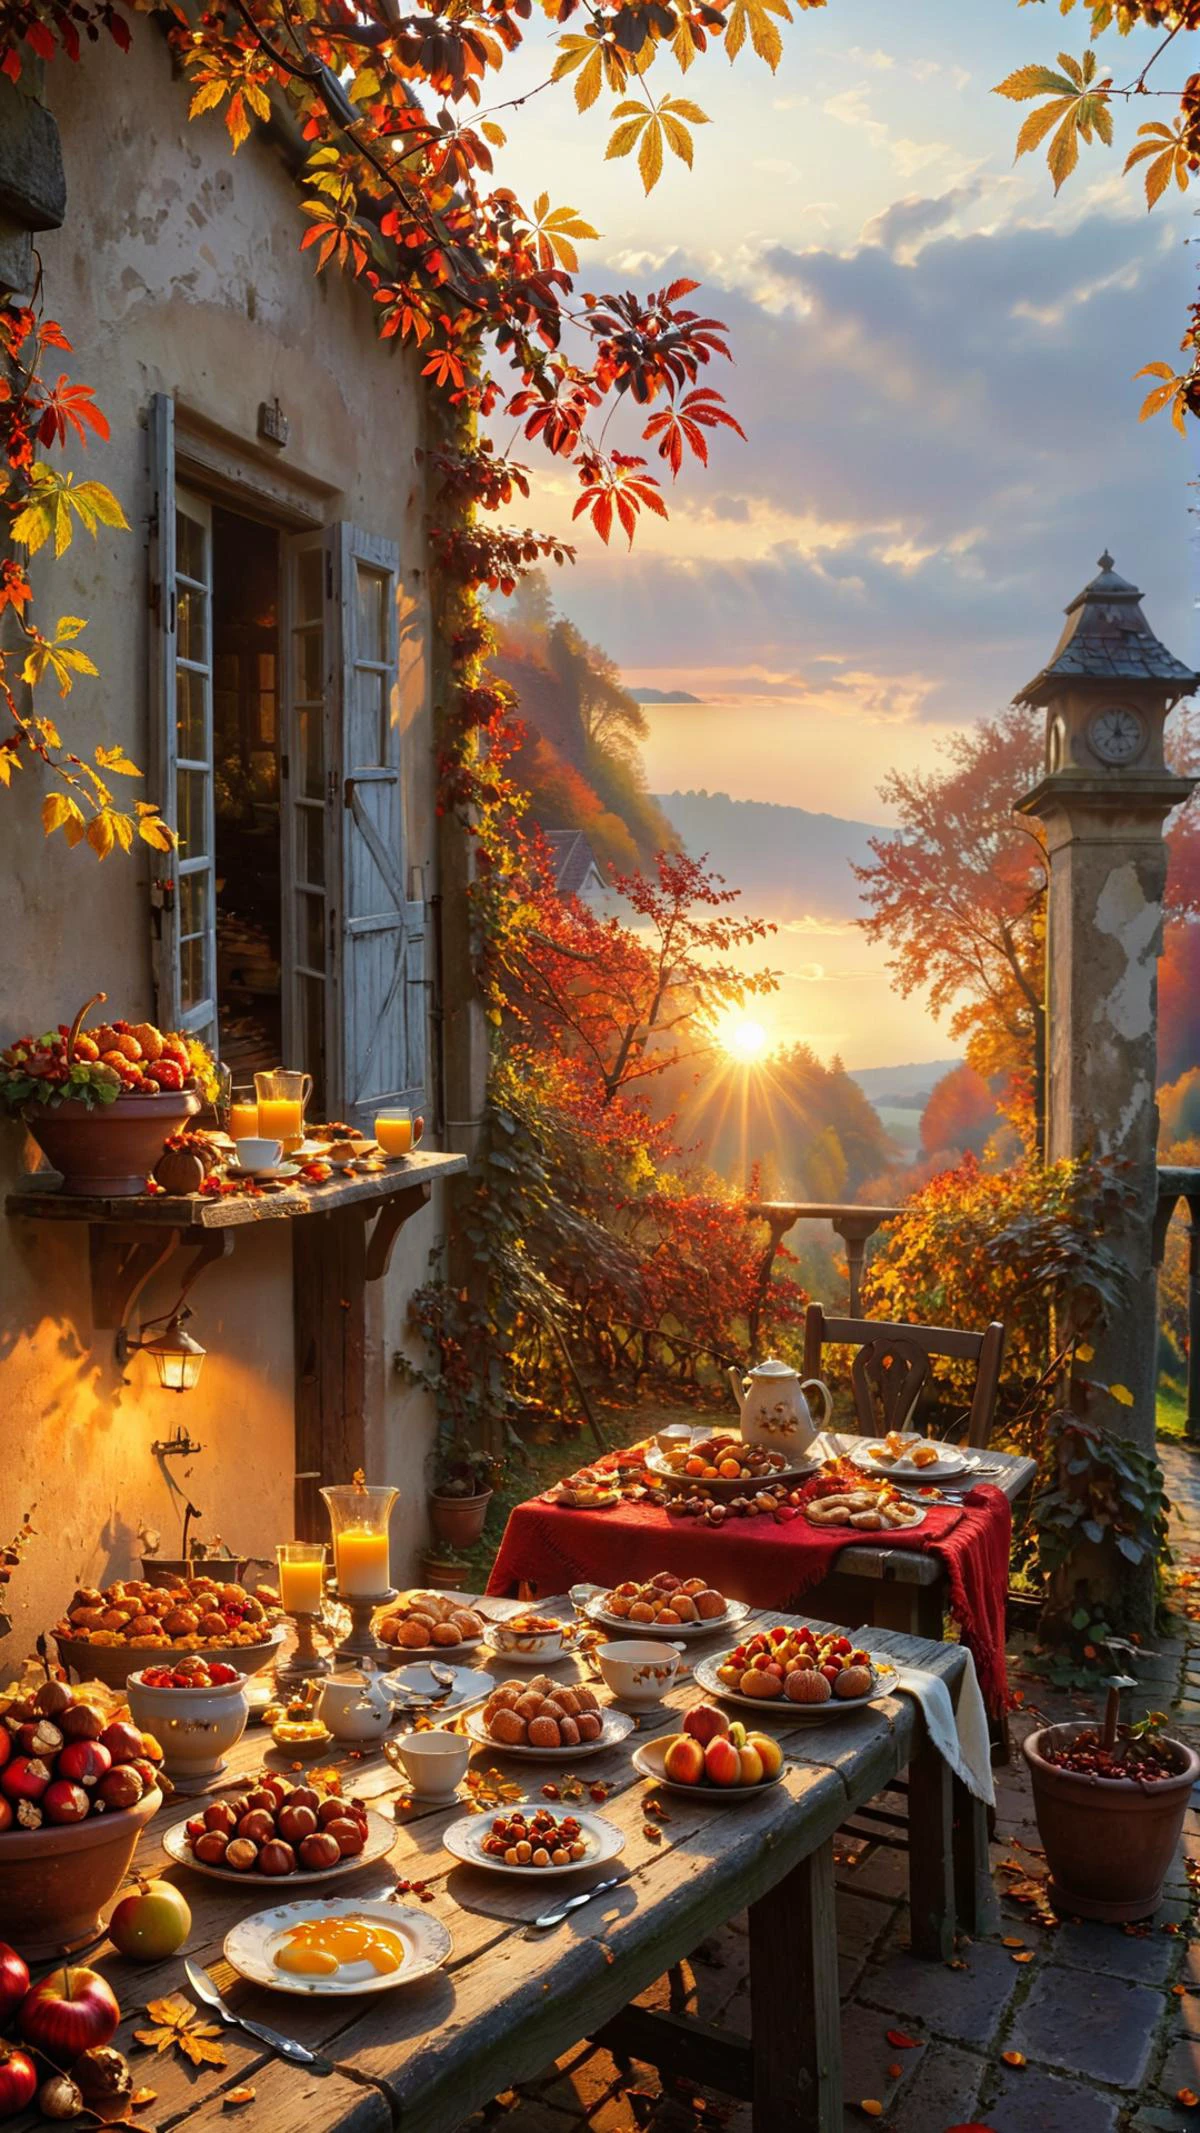 この魅力的なシーンは、豊かな自然の恵みに満ちた素朴なテラスで、心地よい秋の朝の本質を捉えています。. テーブルには新鮮なフルーツとパンが並べられている, 背景には太陽が昇り、風景に暖かい光を投げかけています. 画家は、鮮やかな紅葉から秋の太陽の黄金色まで、季節の豊かな色彩と質感を巧みに表現しています。. 栗やヘーゼルナッツの1粒1粒から食器の複雑な模様まで、細部へのこだわりが目を引く。. この牧歌的な雰囲気は、ゆっくりと朝食をとったり、平和と静けさを感じながら静かに考え事をするのに最適です。, 
dvr-lnds-sdxl 